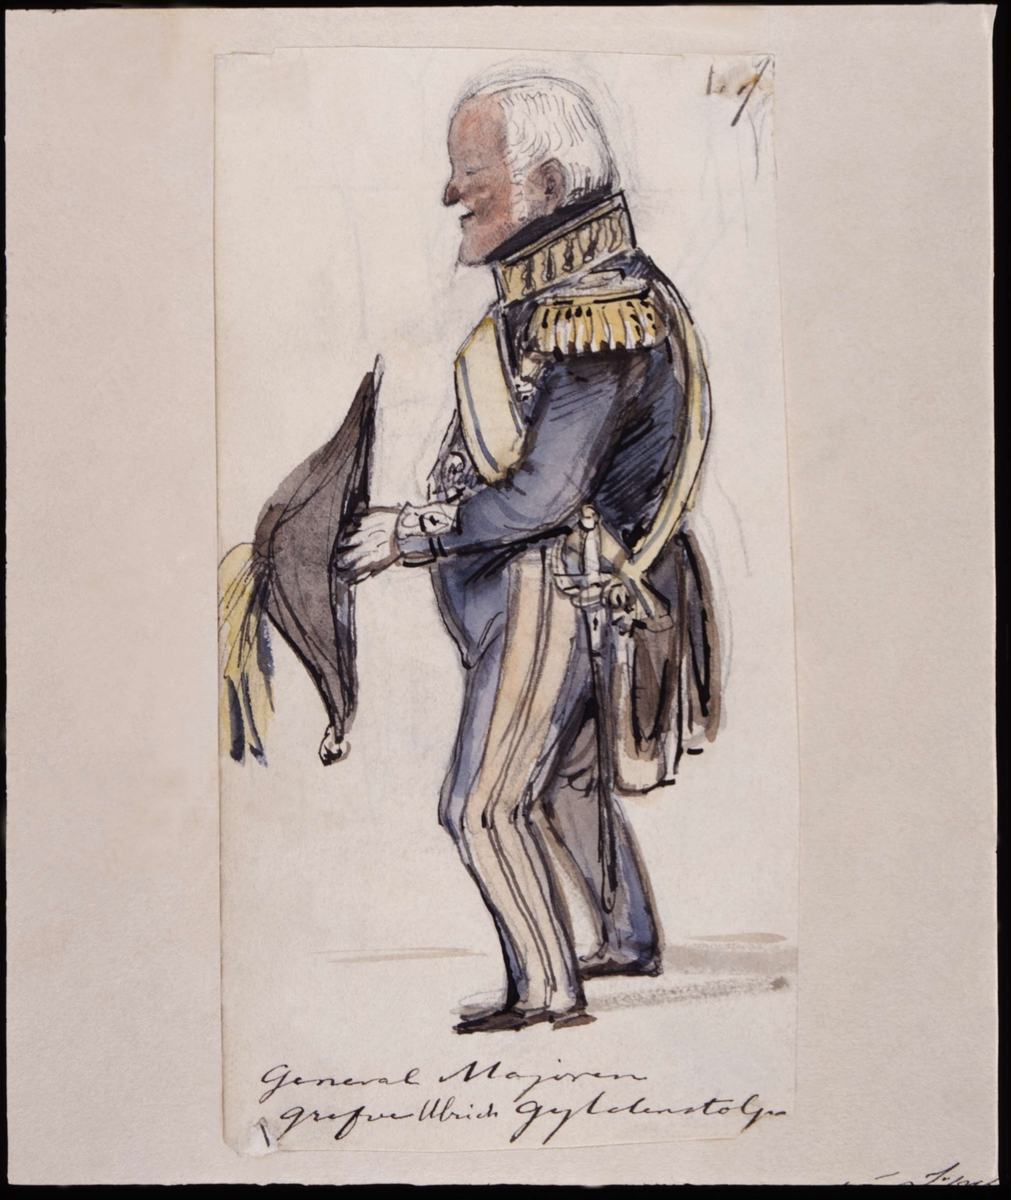 "General Majoren grefve Ulrich Gyldenstolpe". Akvarell av Fritz von Dardel.